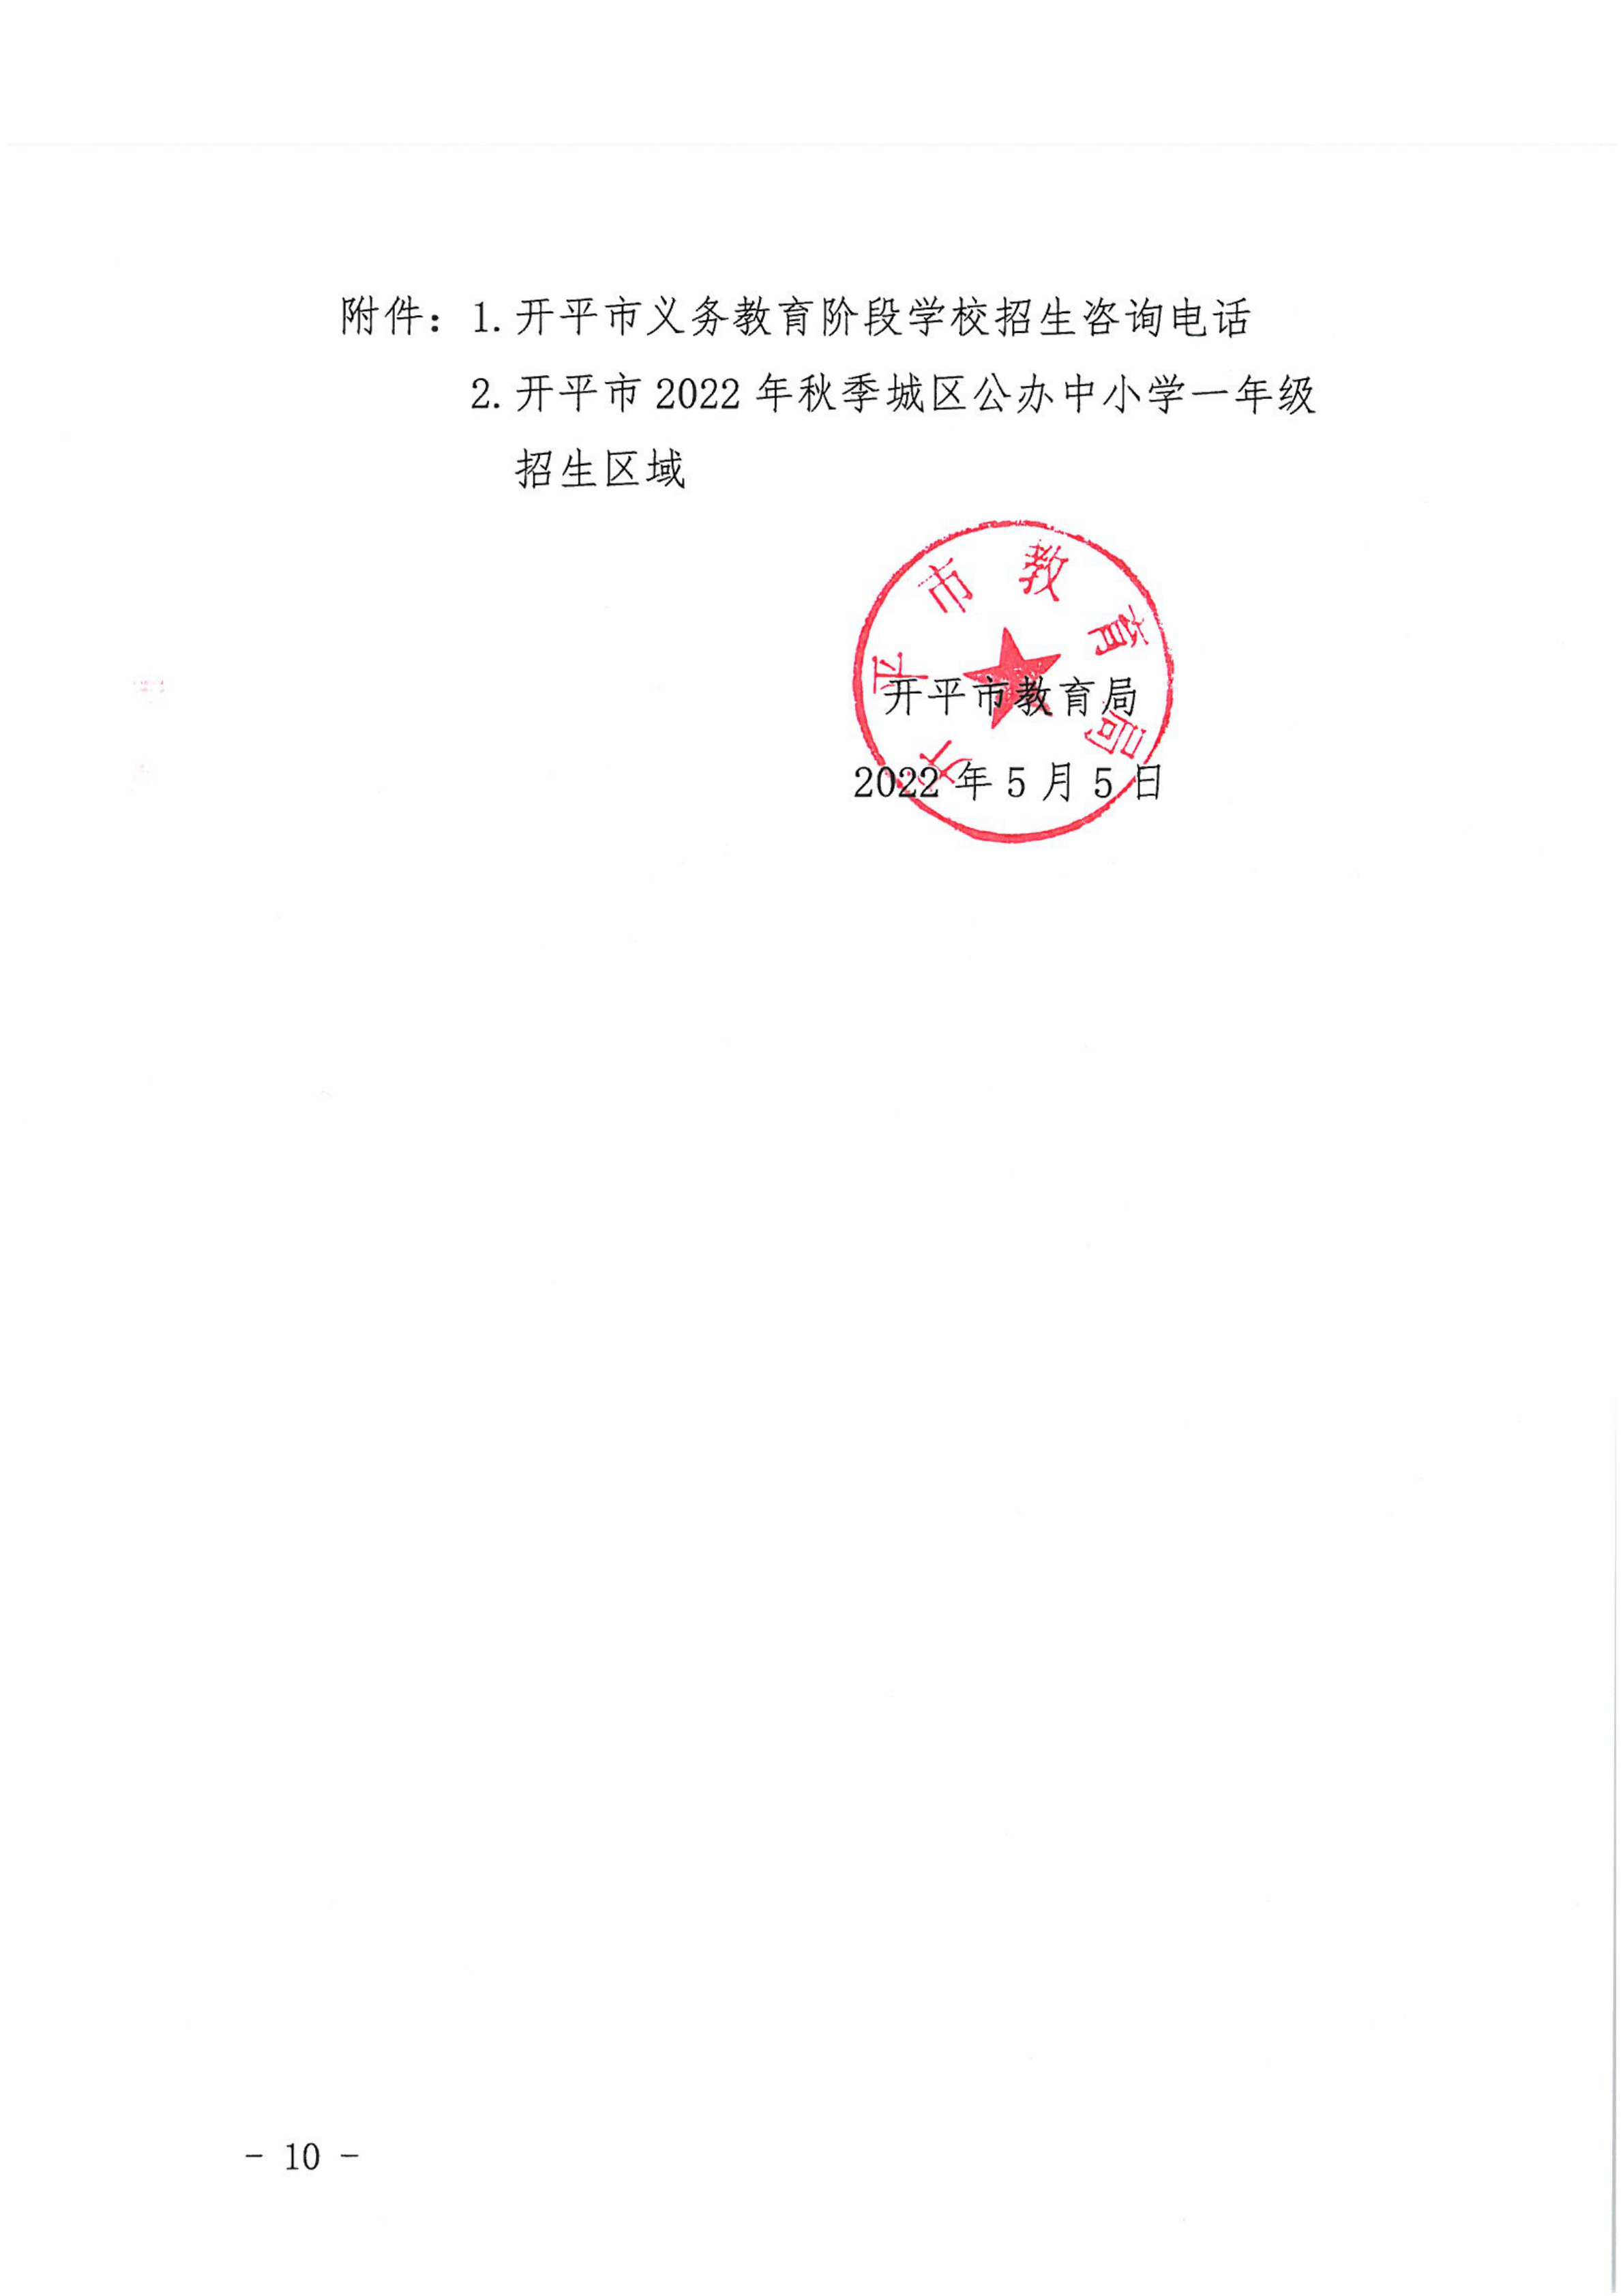 开平市2022年秋季义务教育阶段学校招生工作指引_09.png